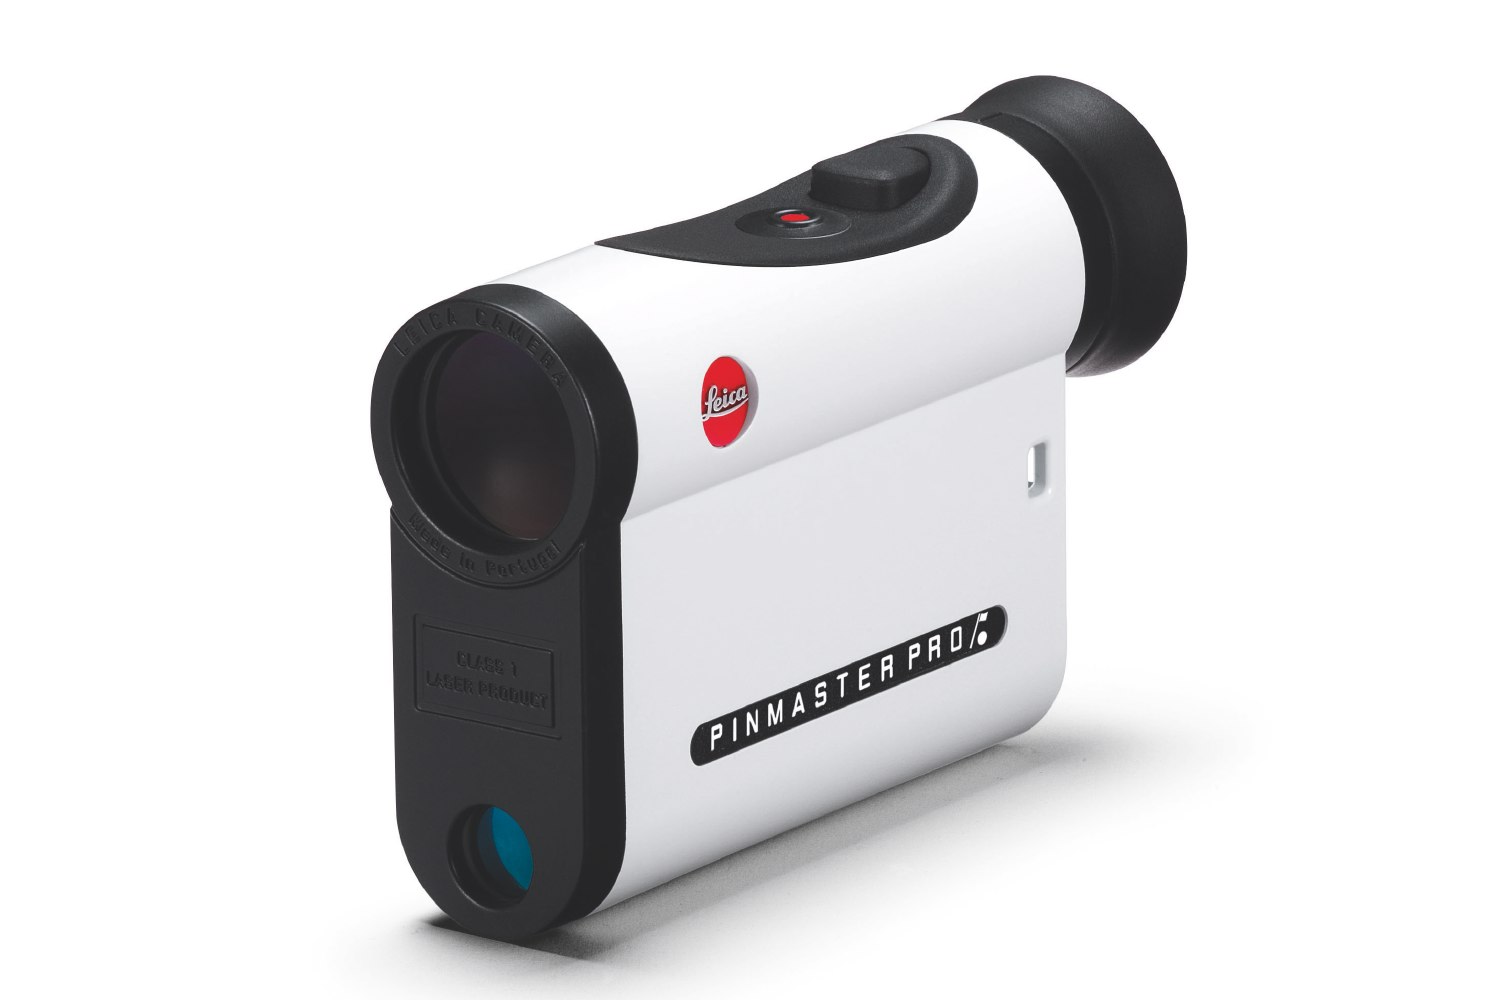 Leica  Laserentfernungsmesser Pinmaster II Pro Laserentfernungsmesser mit verbesserter Erst-Ziel-Logik und ACD-Technologie.